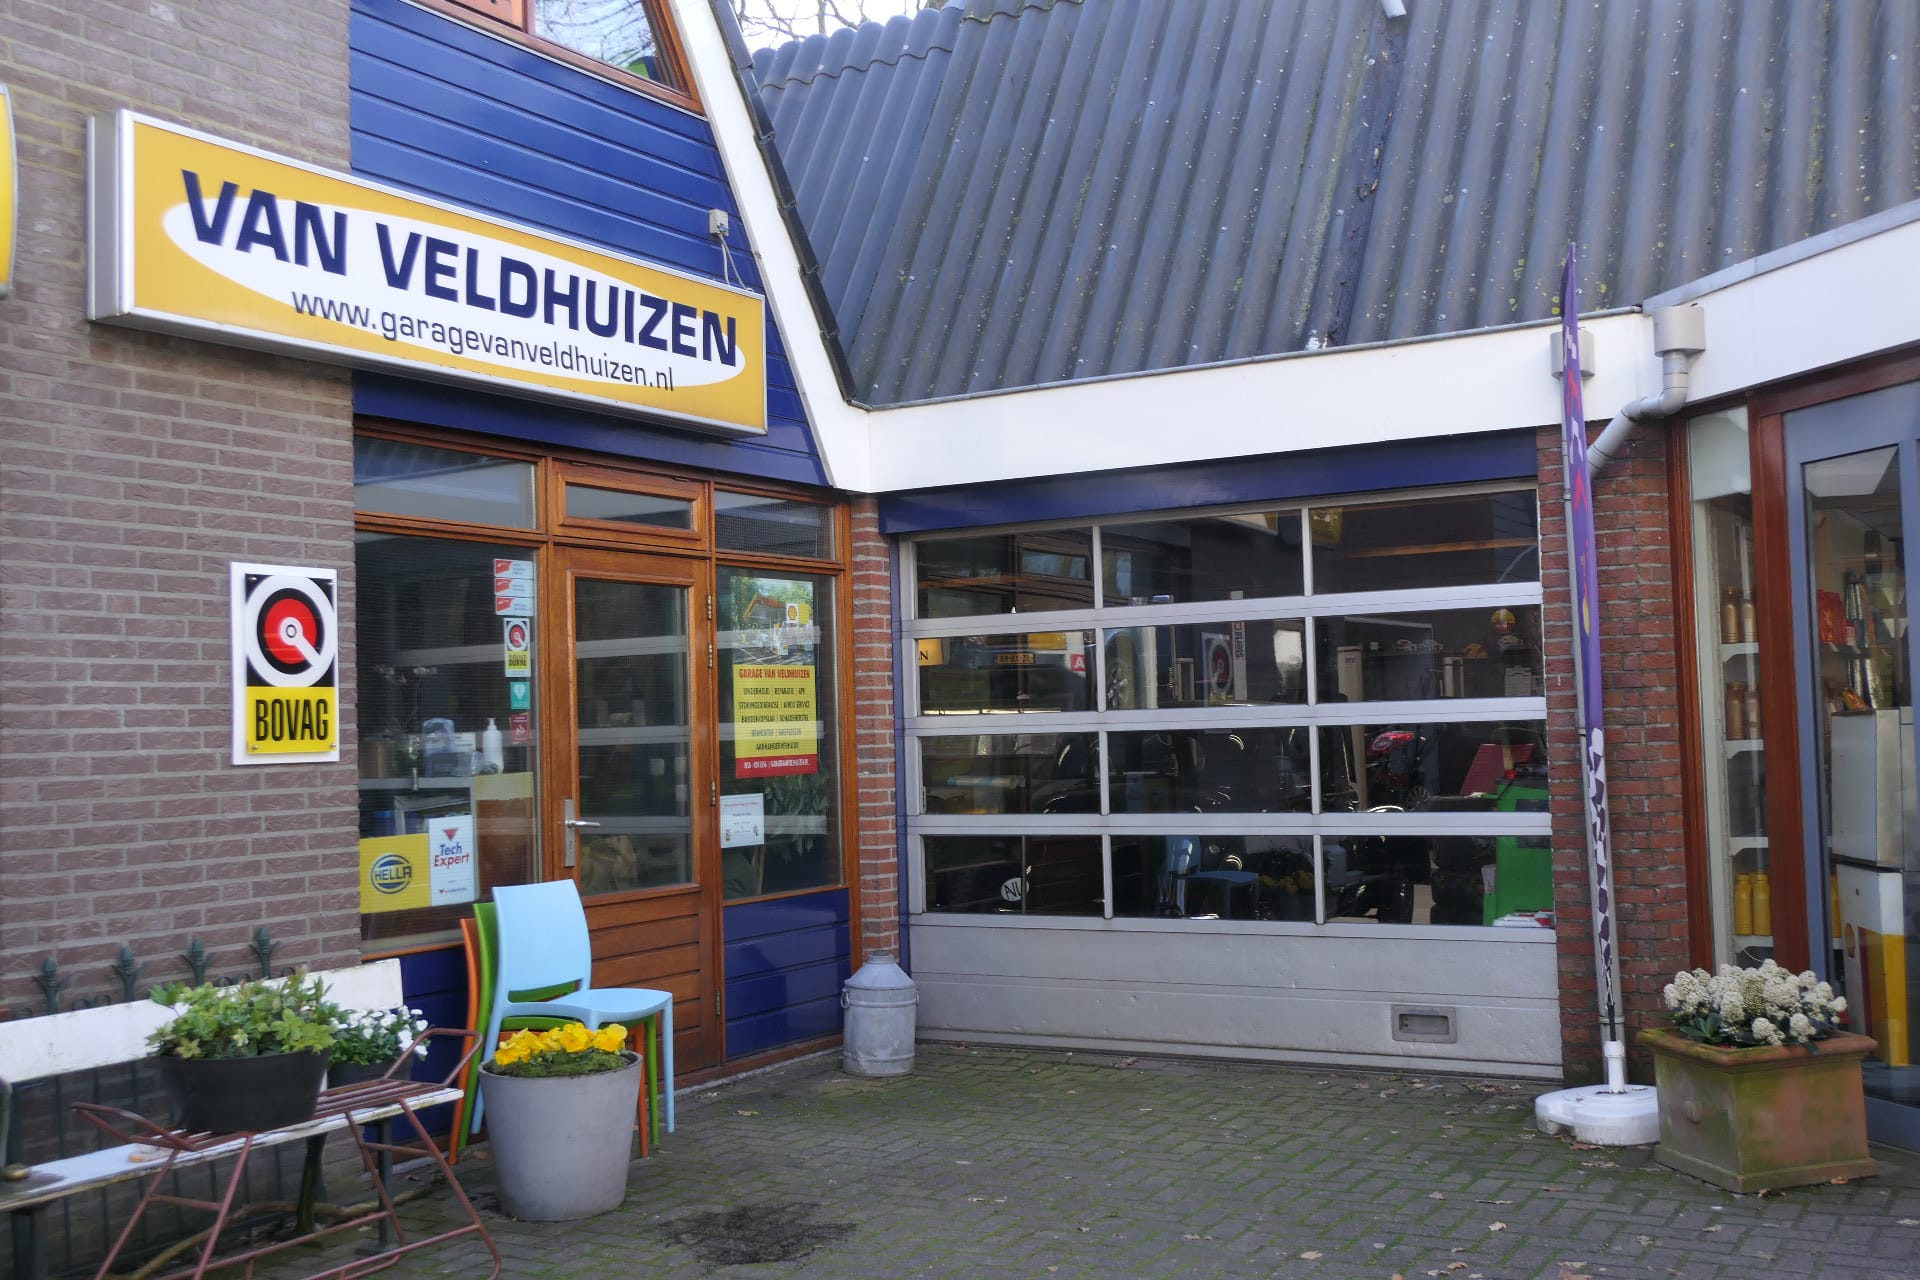 Garage van Veldhuizen ingang